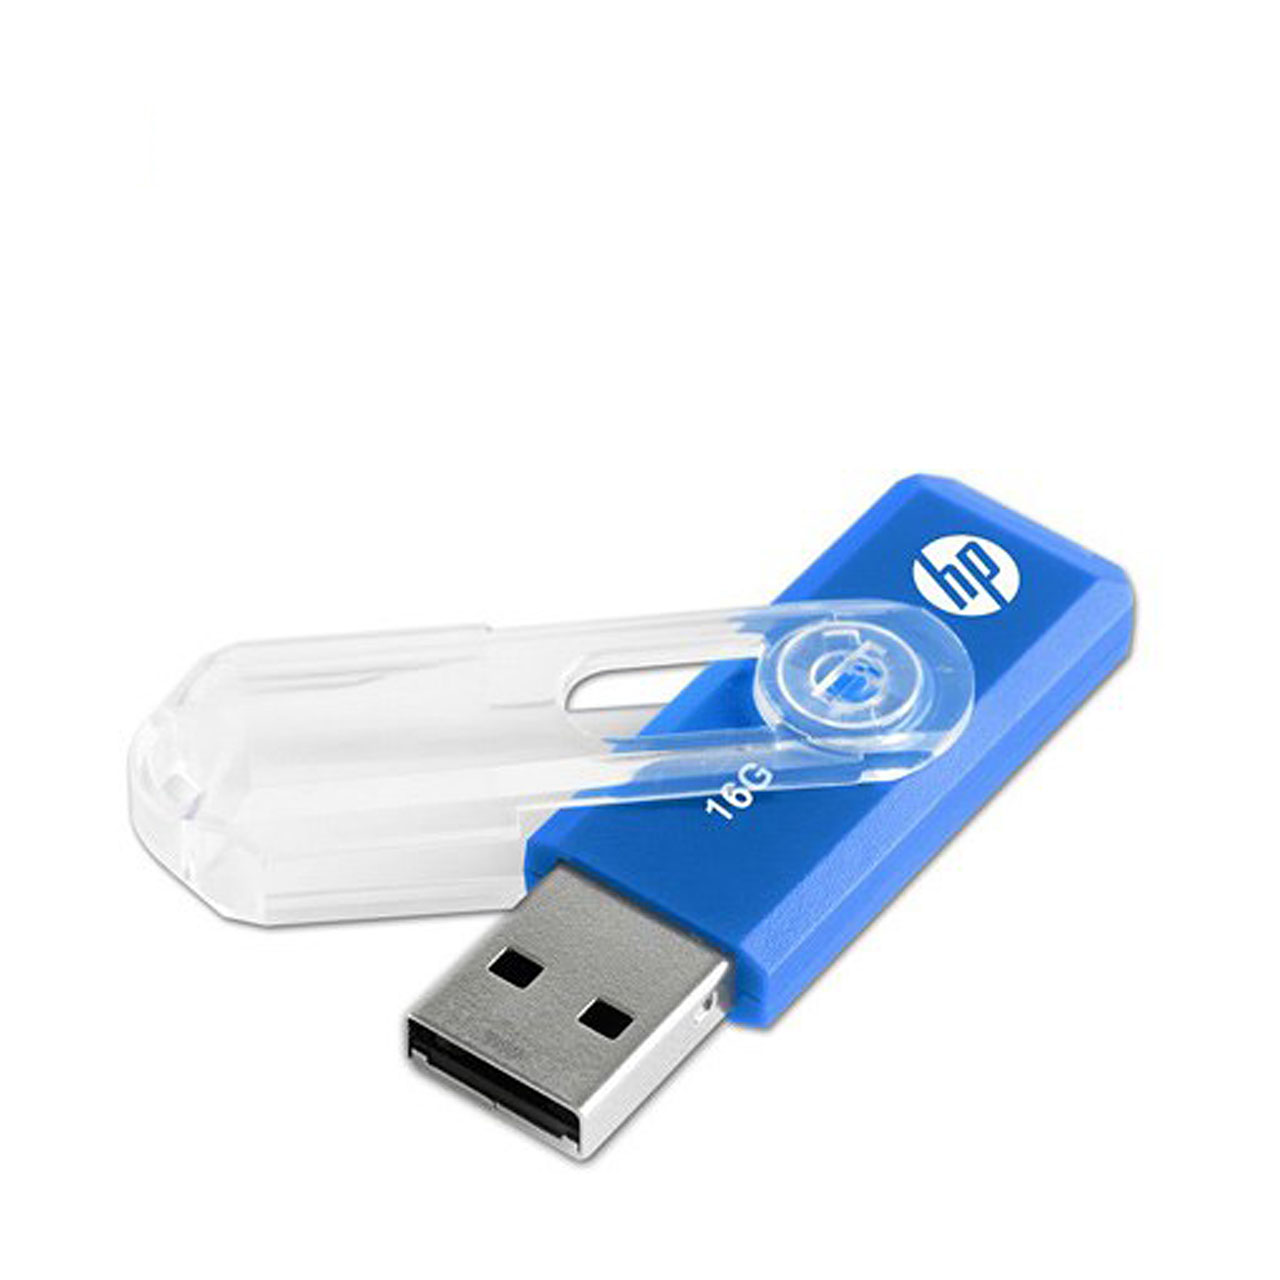 فلش مموری USB 2.0 اچ پی مدل v265b ظرفیت 16 گیگابایت